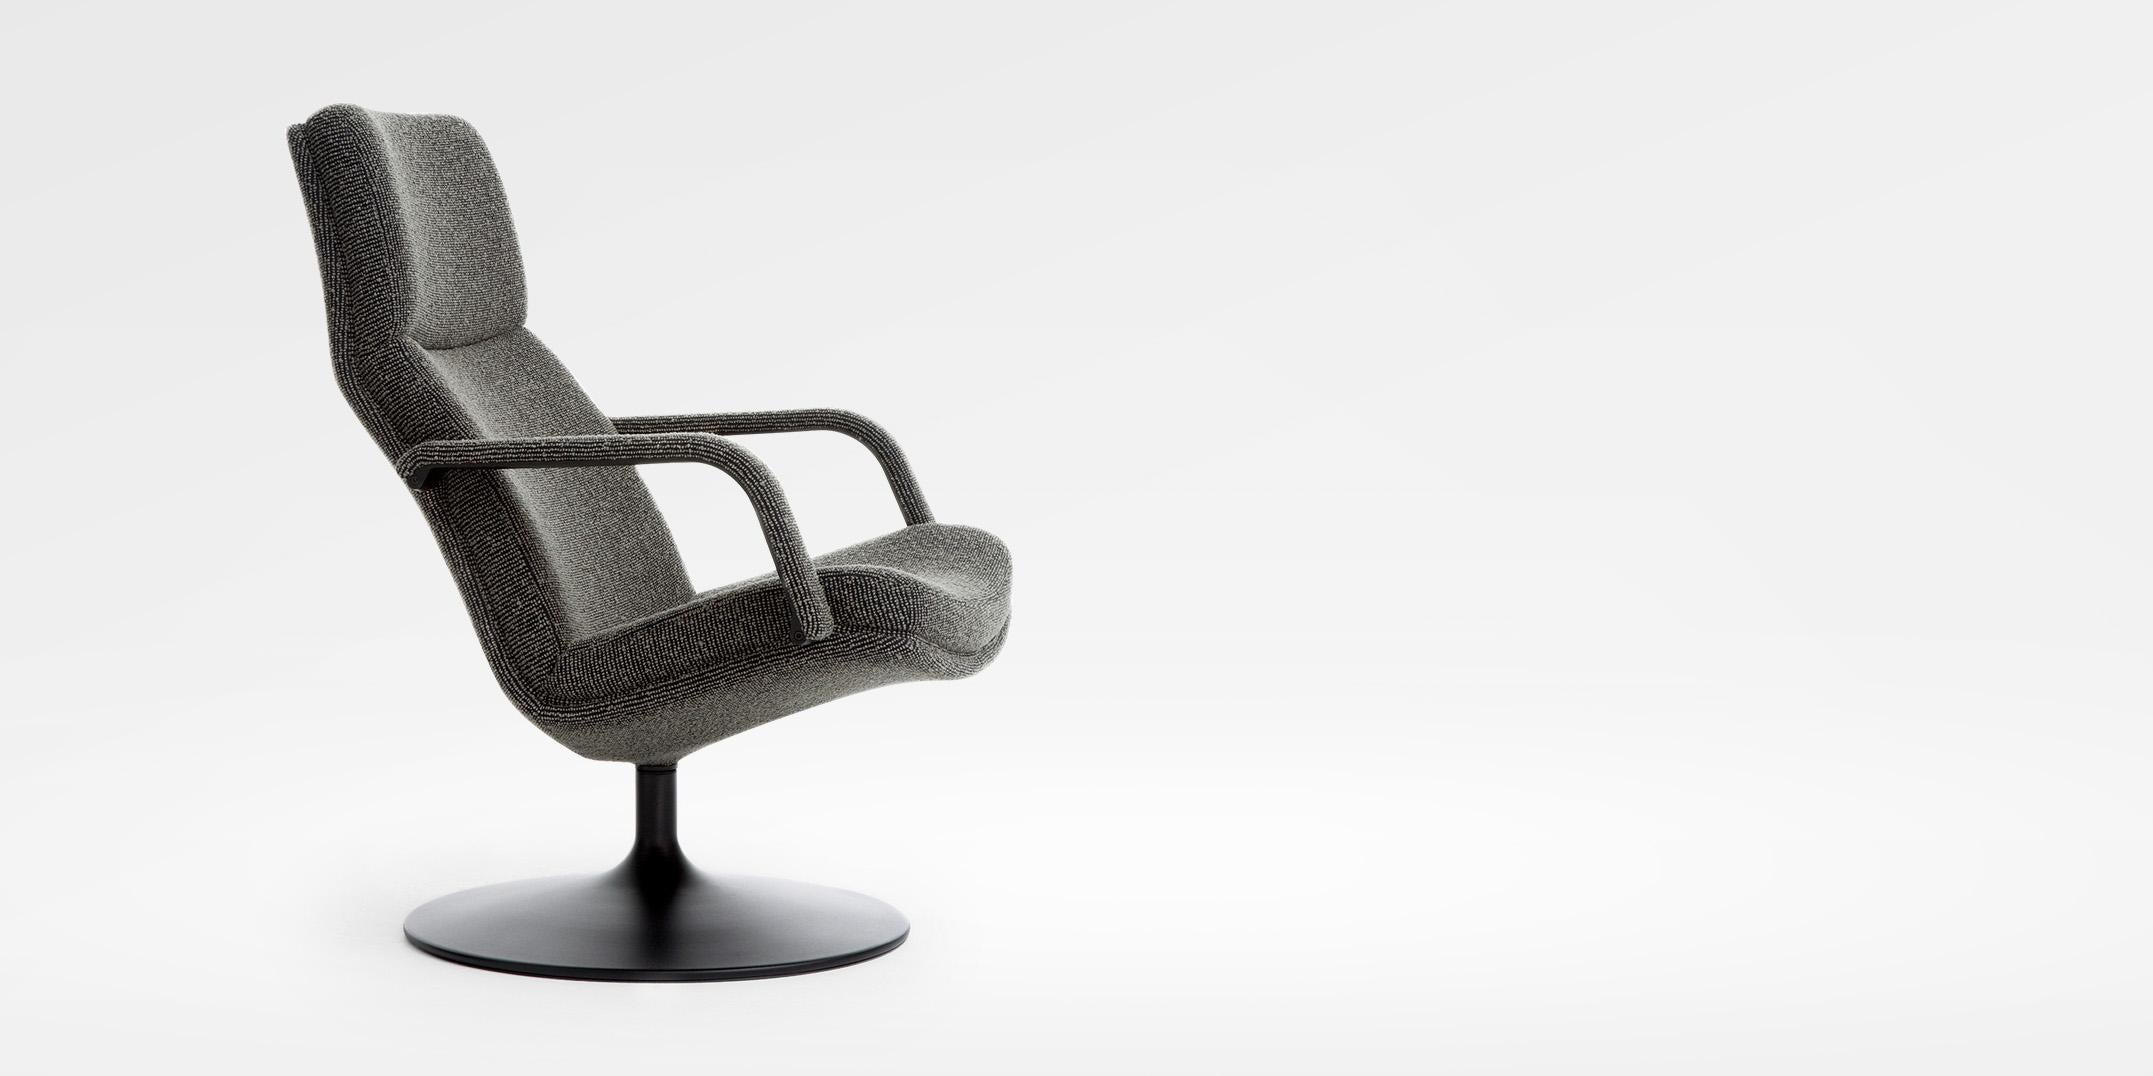 Ein luxuriöser Sessel zum Träumen, Entspannen oder für ein Gespräch. Für noch mehr Komfort gibt es einen optionalen Fußhocker. Erhältlich in zwei Versionen, beide mit Armlehnen. Der Stuhl kann mit einem verchromten Fünffuß oder einem Tellerfuß